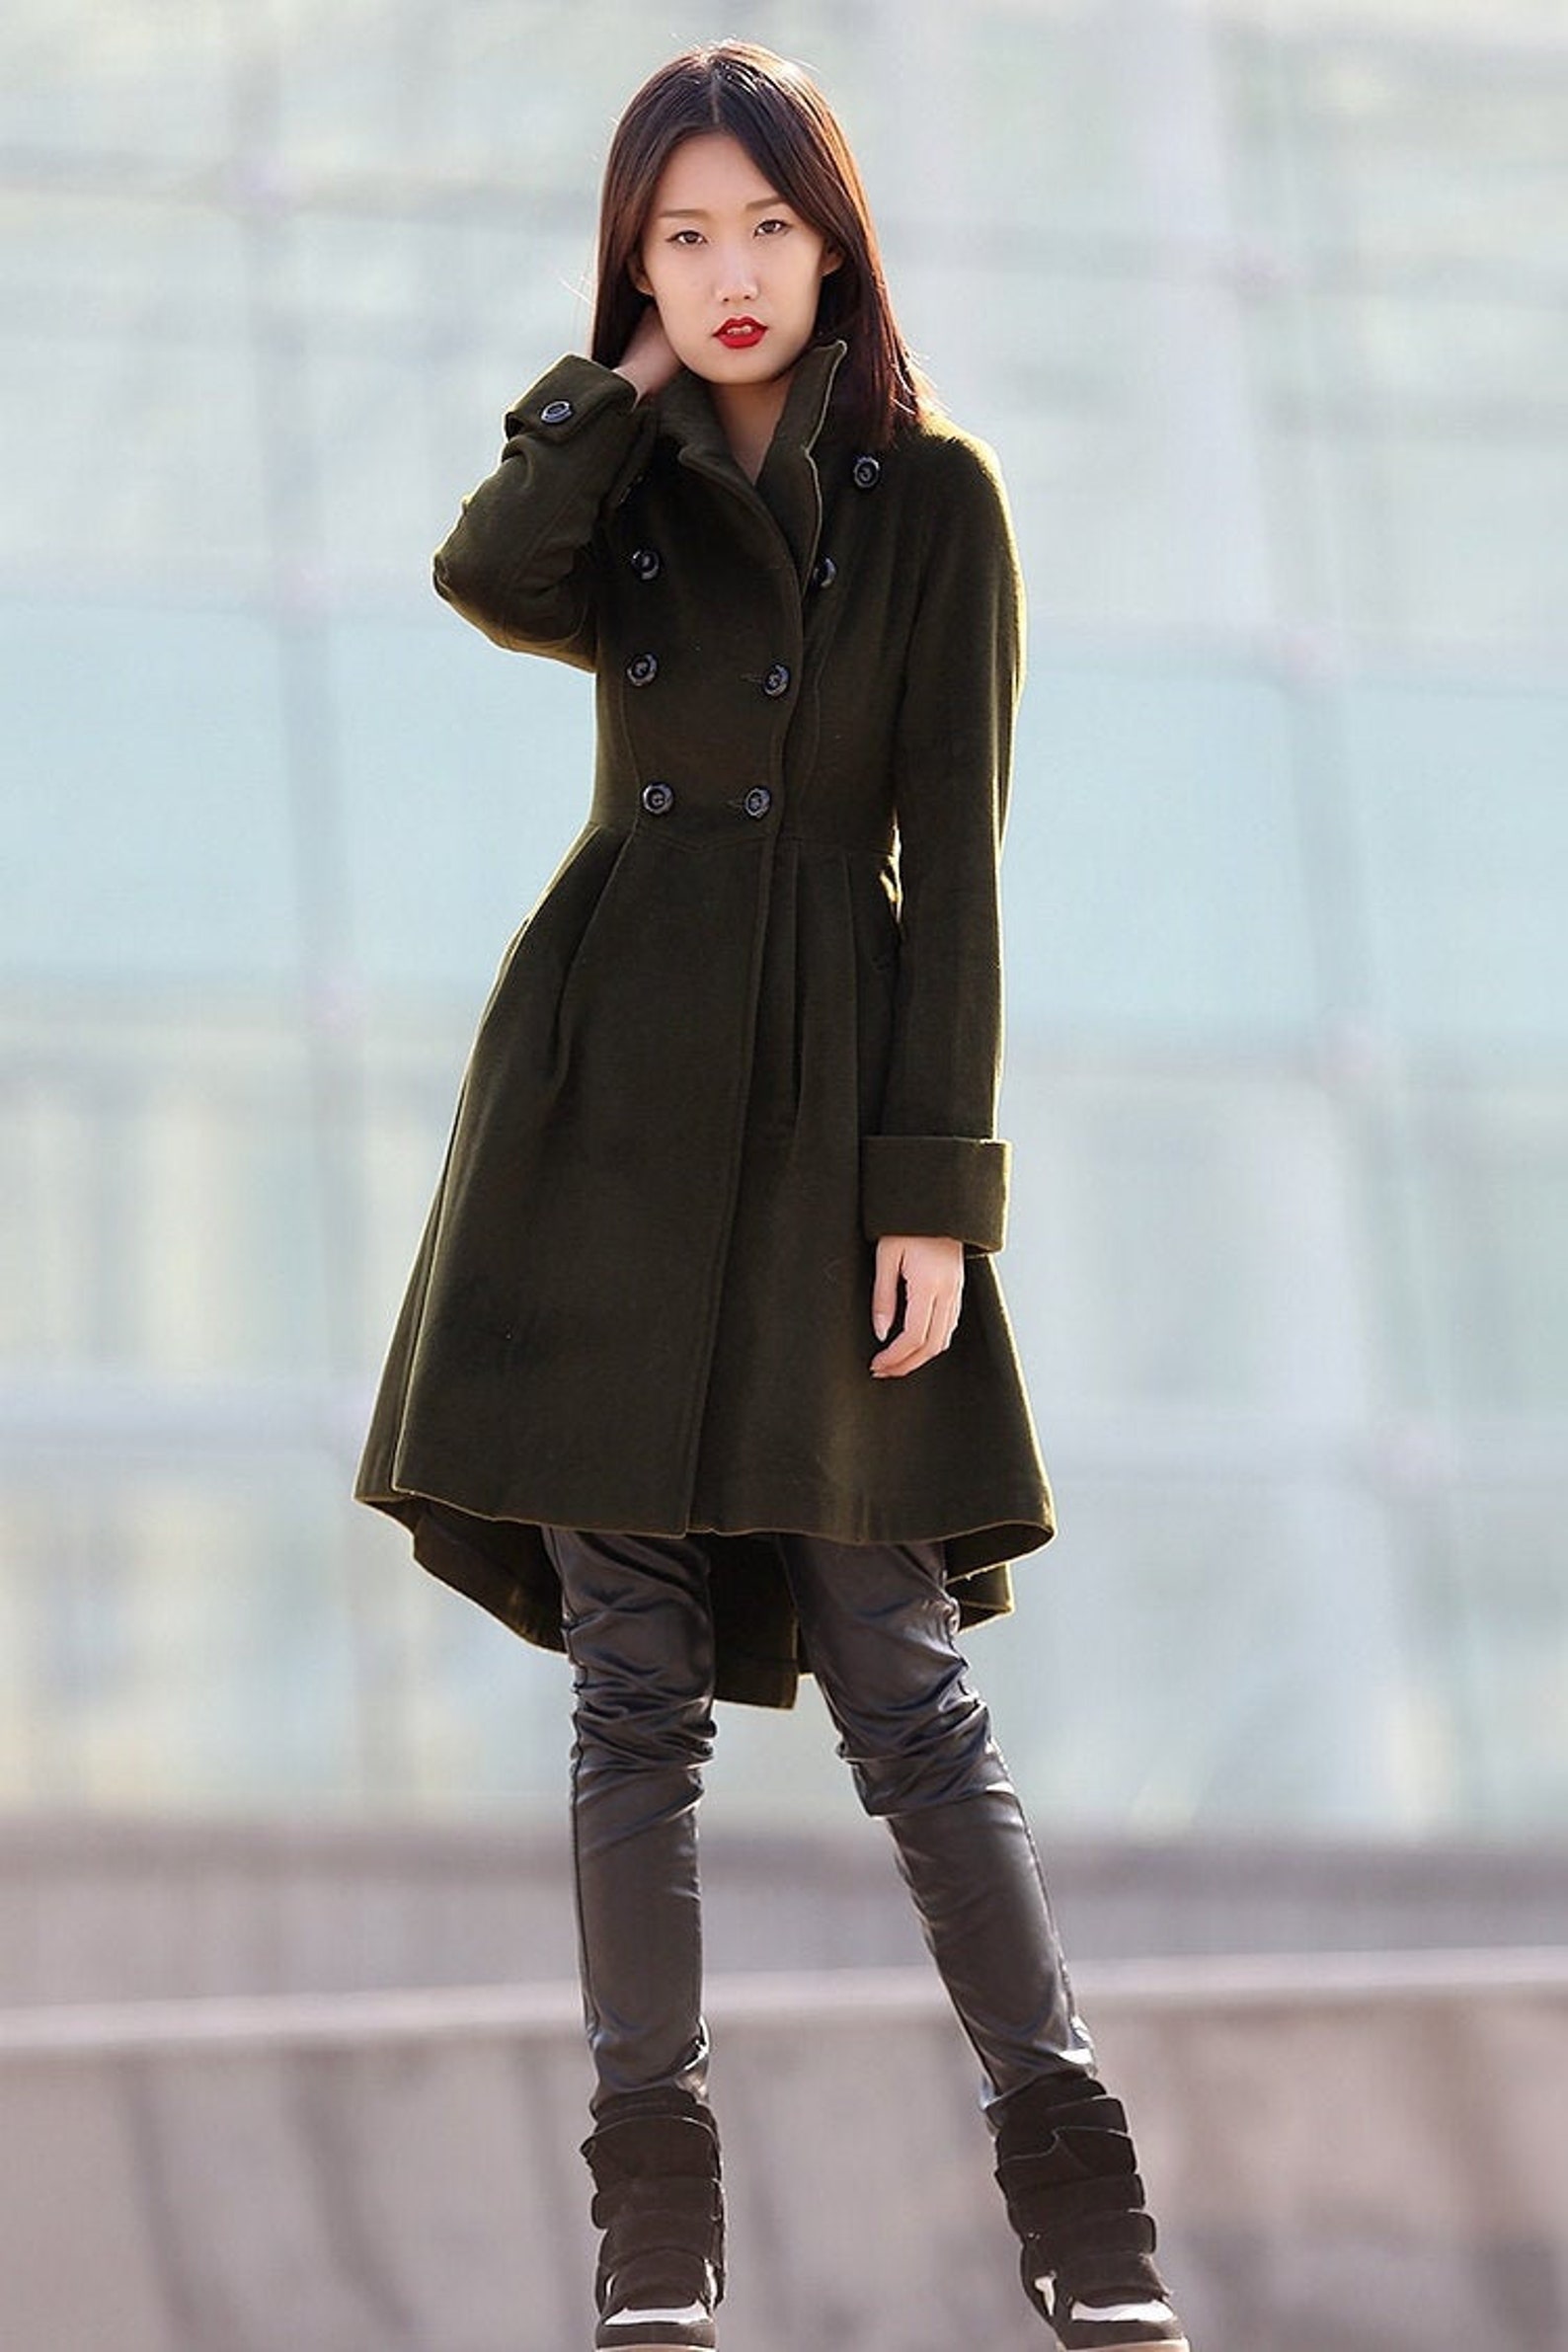 Green coat winter coats for women winter coat coat jacket | Etsy